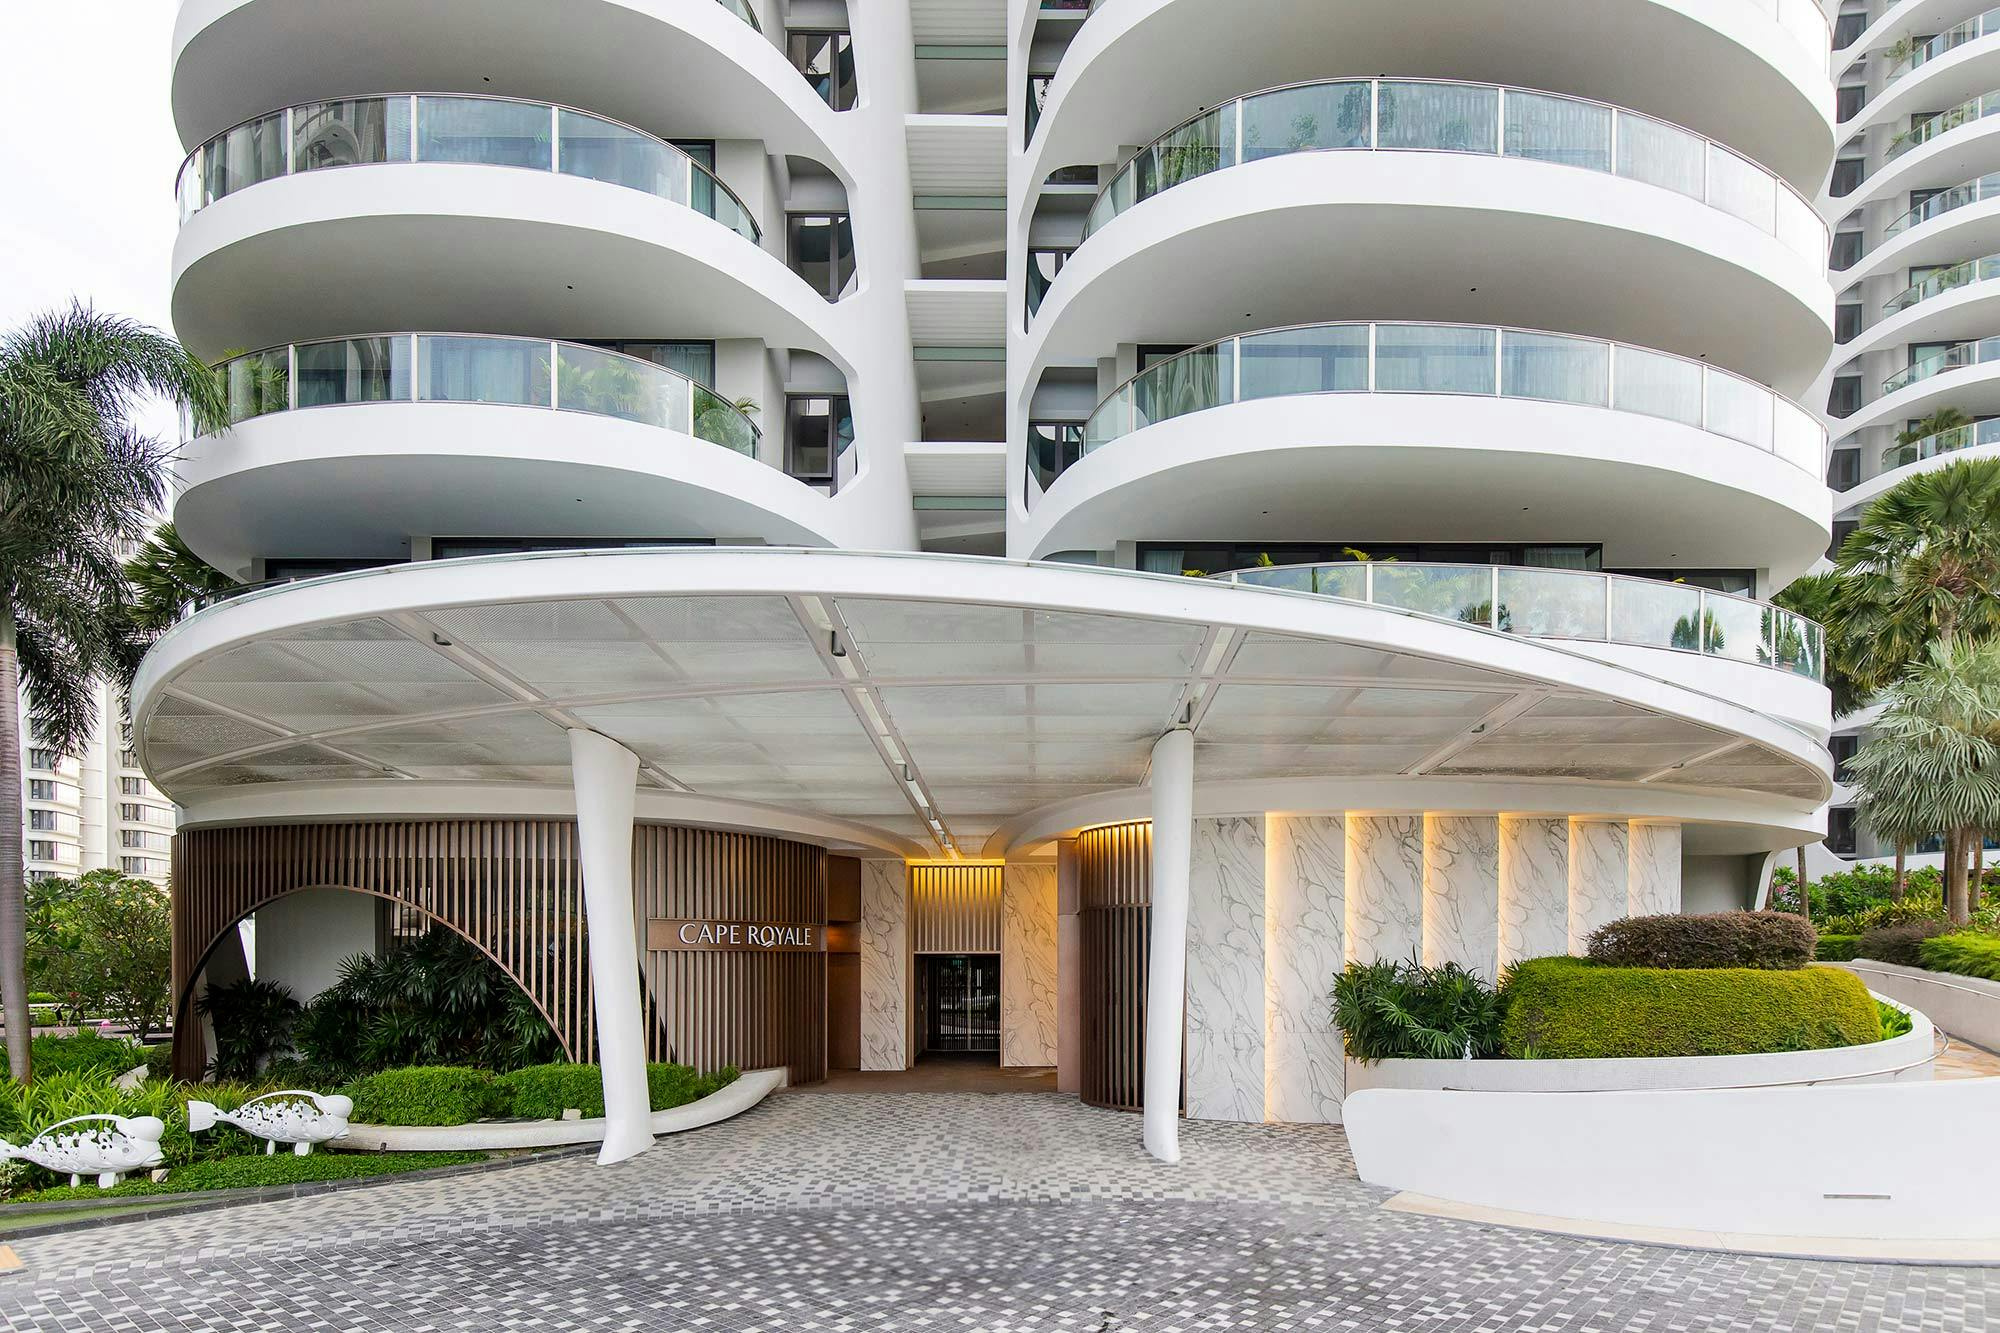 Bildnummer 32 des aktuellen Abschnitts von {{Dekton adds a new touch of elegance to the reception area of a luxury development in Singapore}} von Cosentino Deutschland